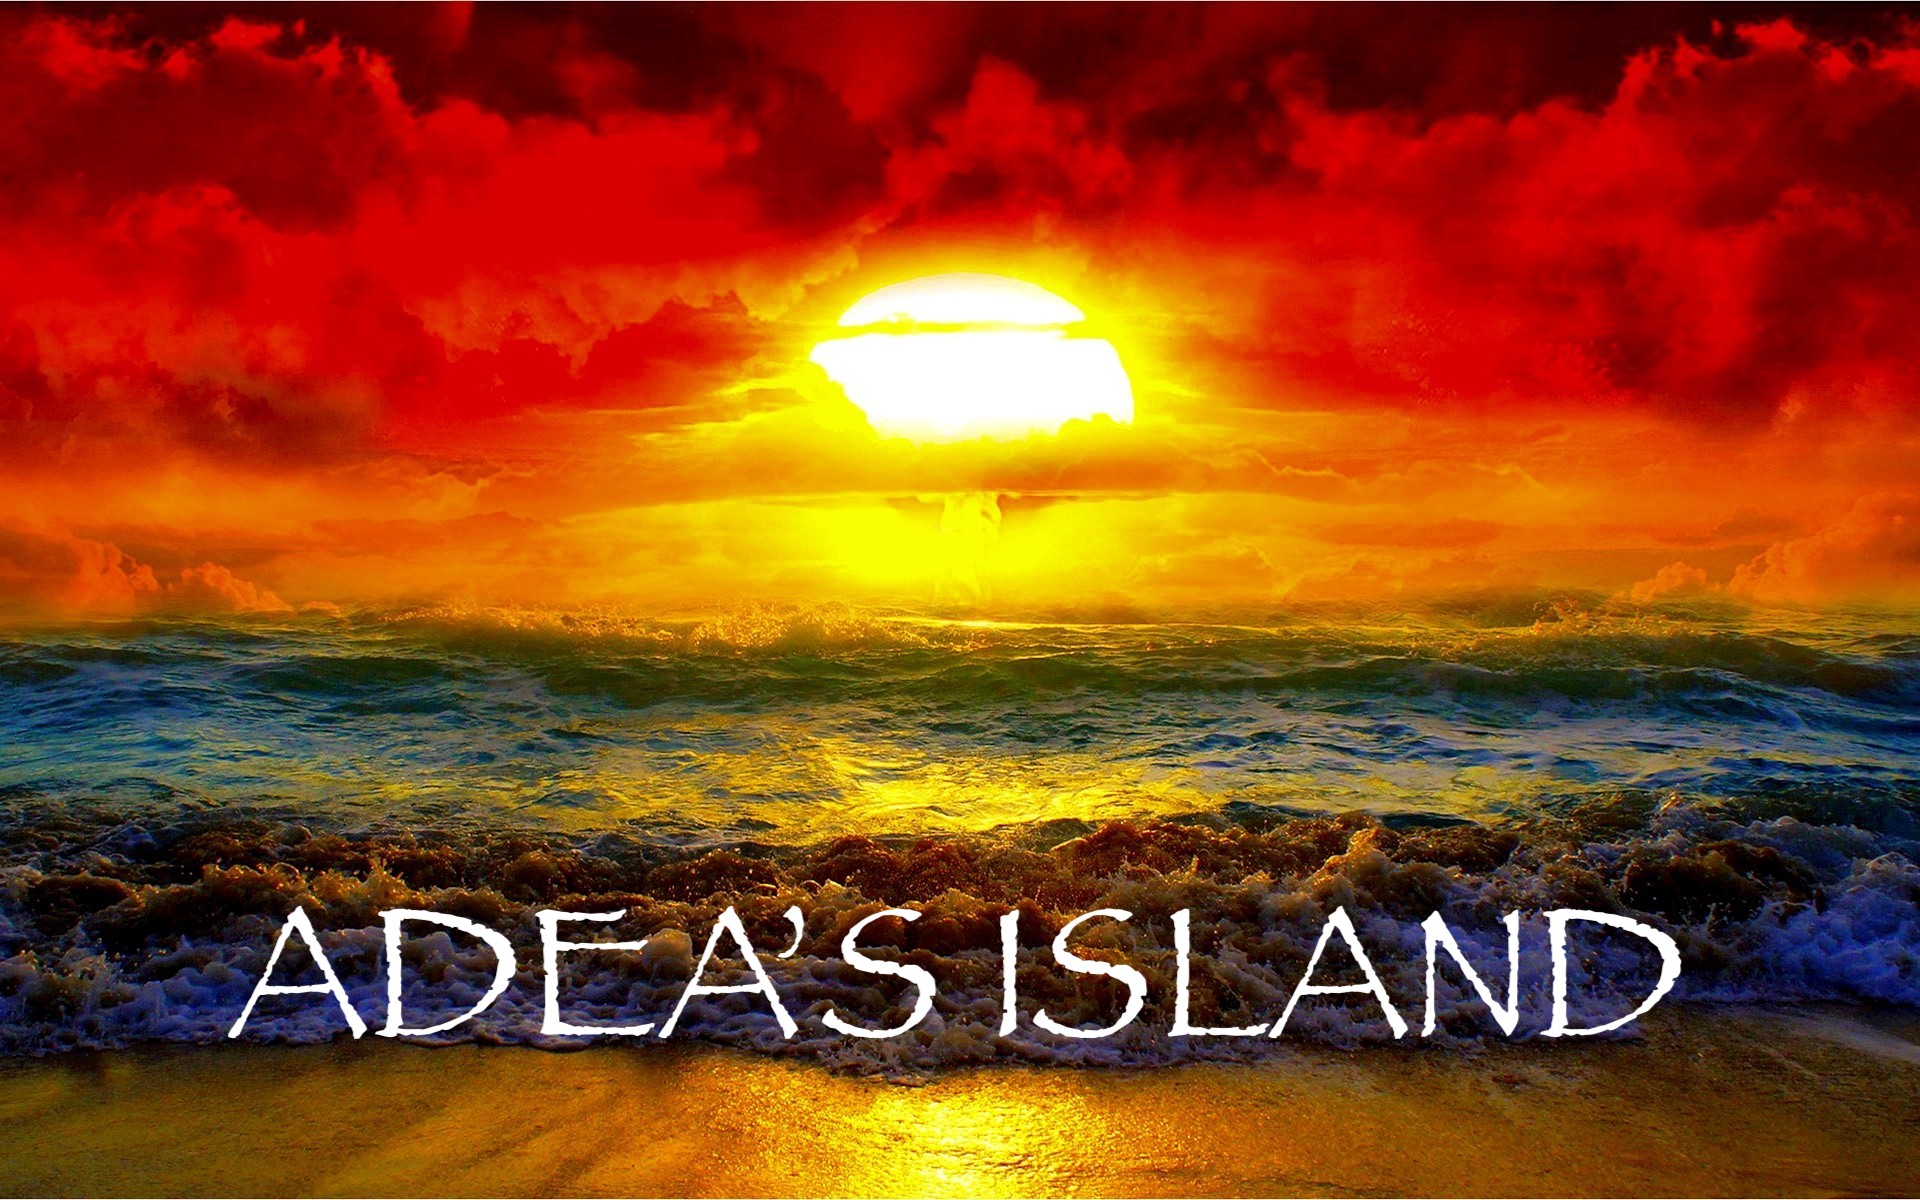 Adea's Island SLYT